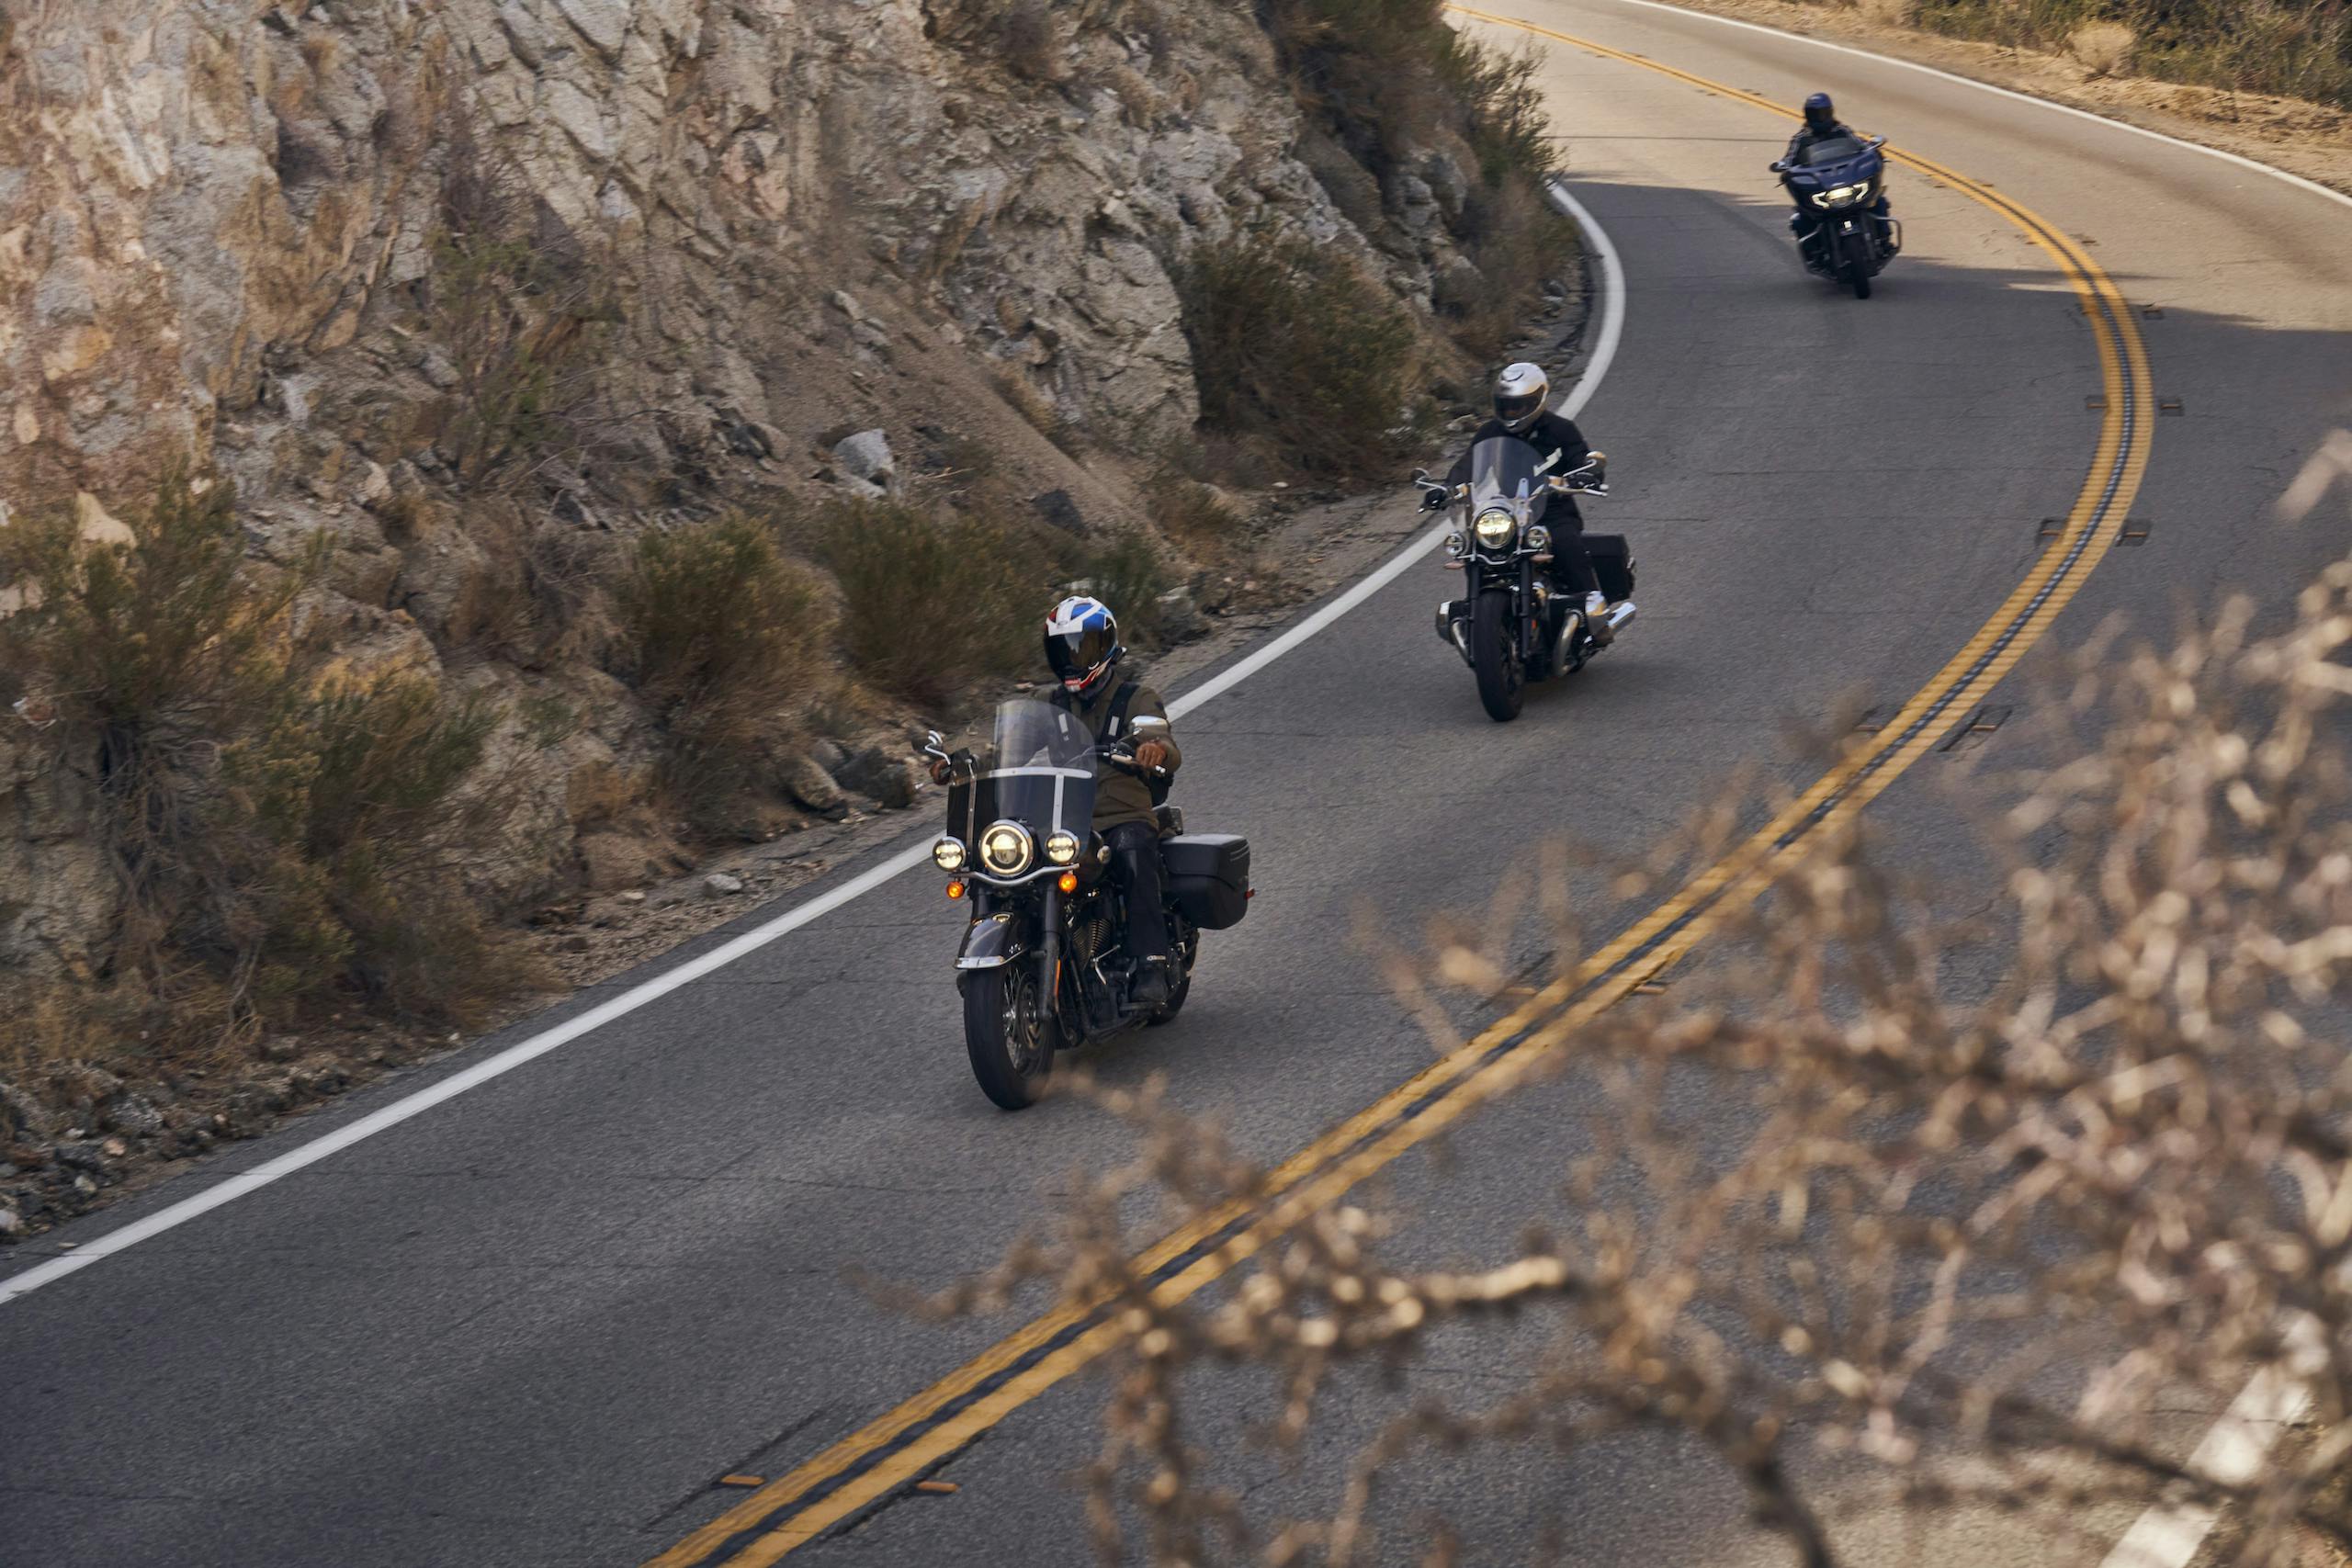 cruiser motos rider group front riding action high angle